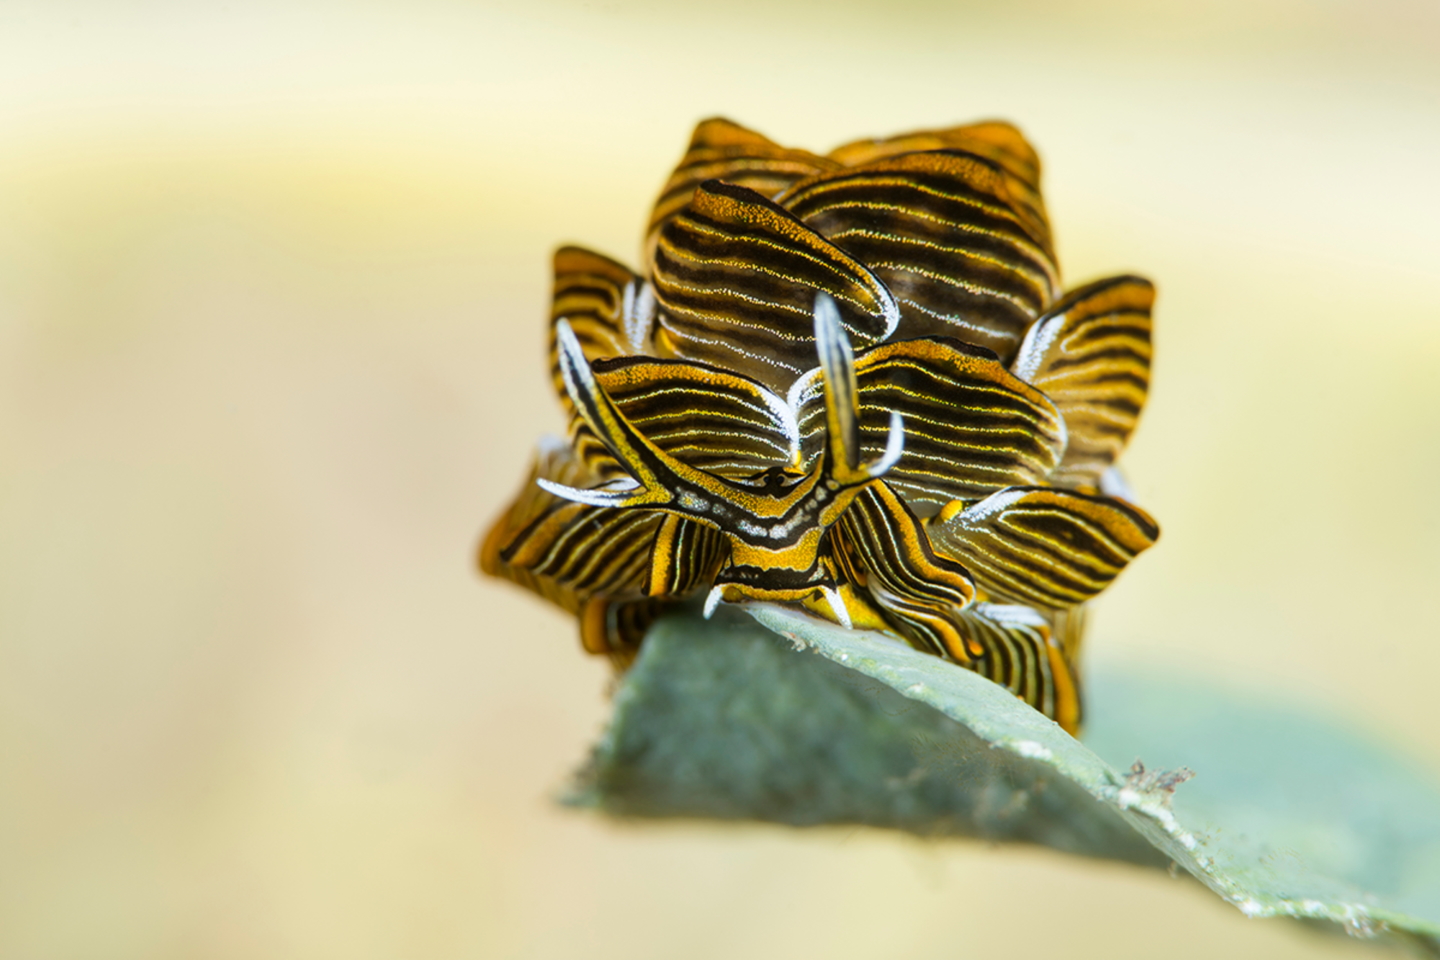 Победитель в номинации «Макросъемка». Морской слизень-бабочка (Cyerce nigra) "стоит" на водорослях. Длина тела существа составляет всего 15 мм. Папуа - Новая Гвинея. Фото: Yury Ivanov/Through Your Lens